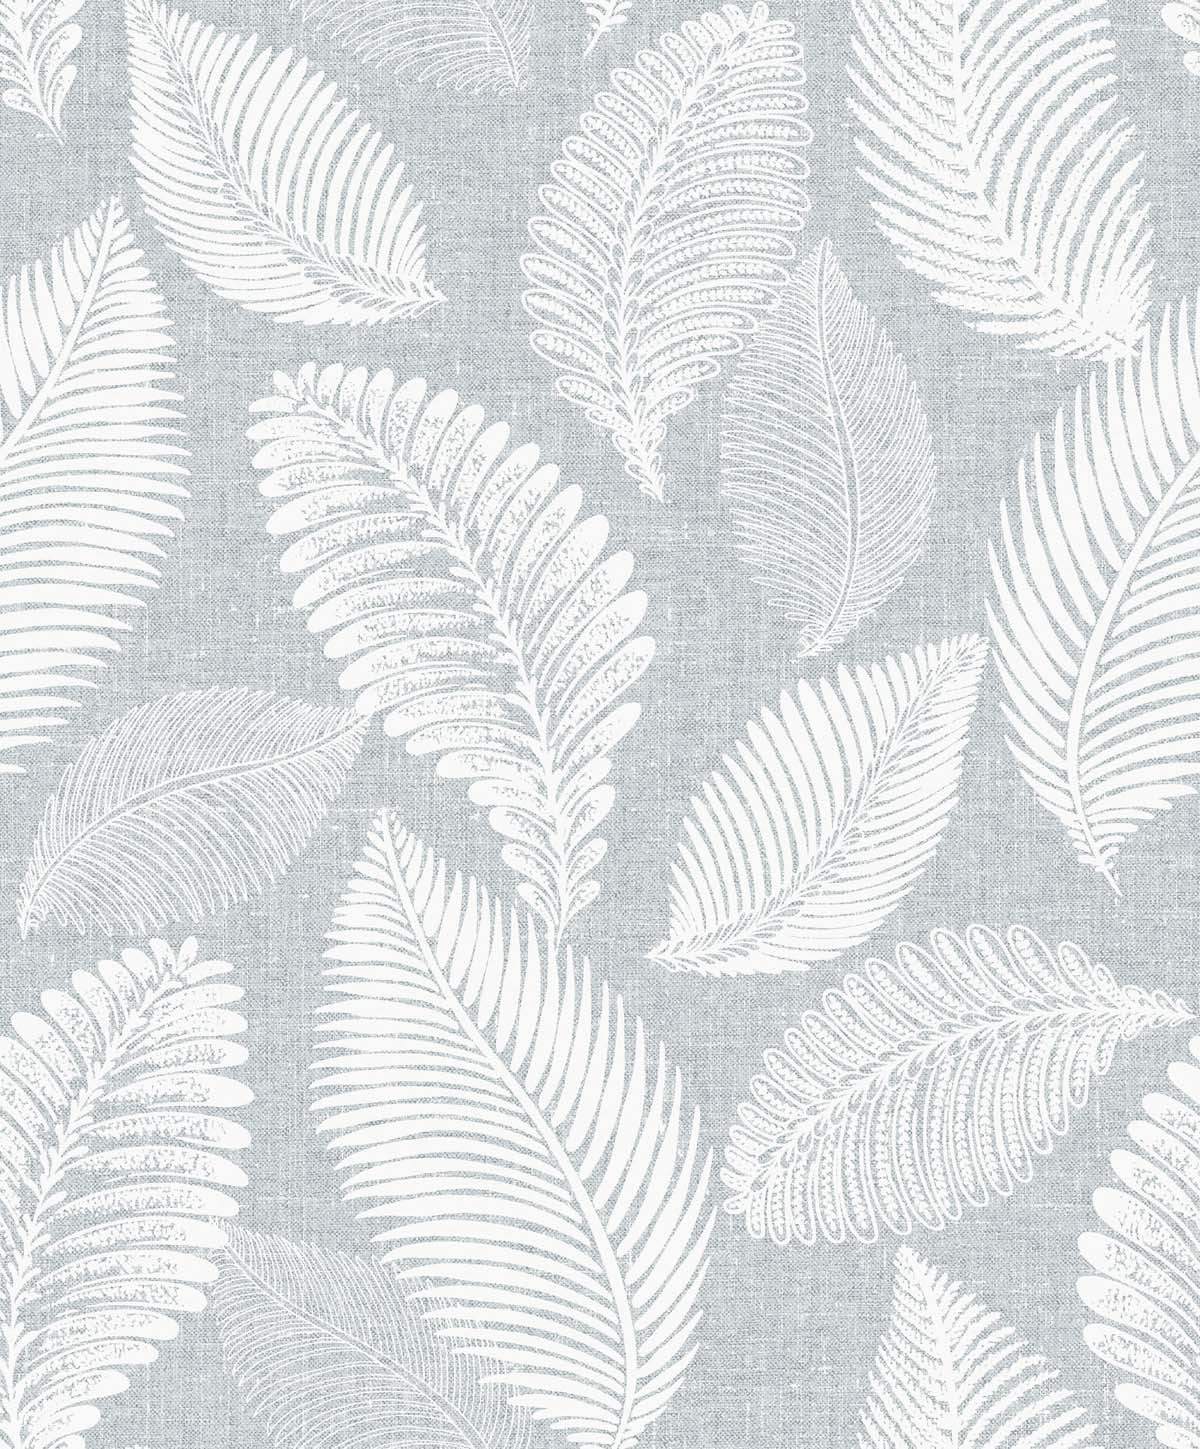 EW10028 | Tossed Leaves, Grey - Seabrook Designs Wallpaper